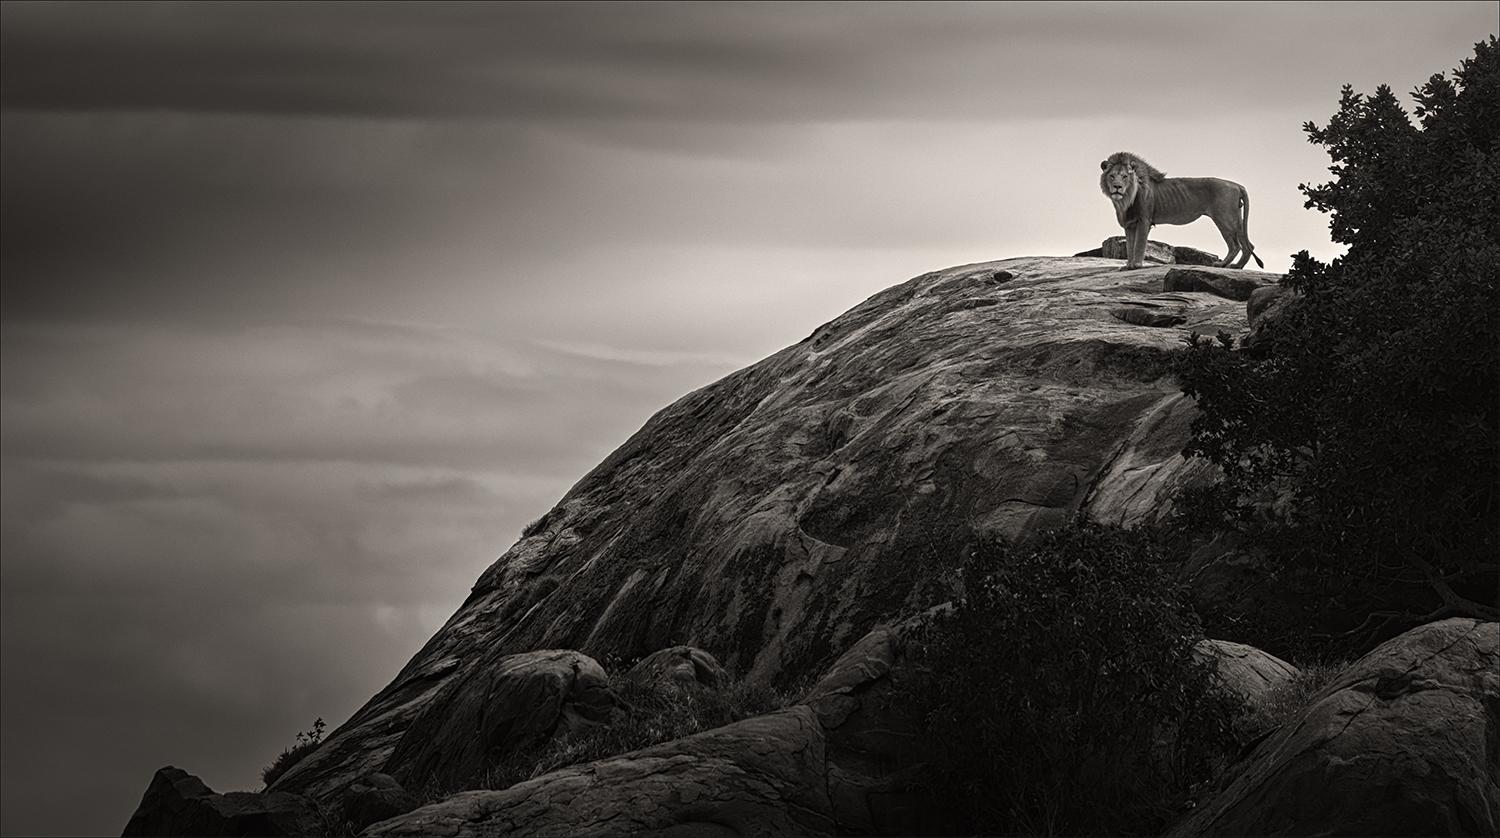 Landscape Photograph Joachim Schmeisser - Mon royaume, noir et blanc, animal, Afrique, photographie, lion